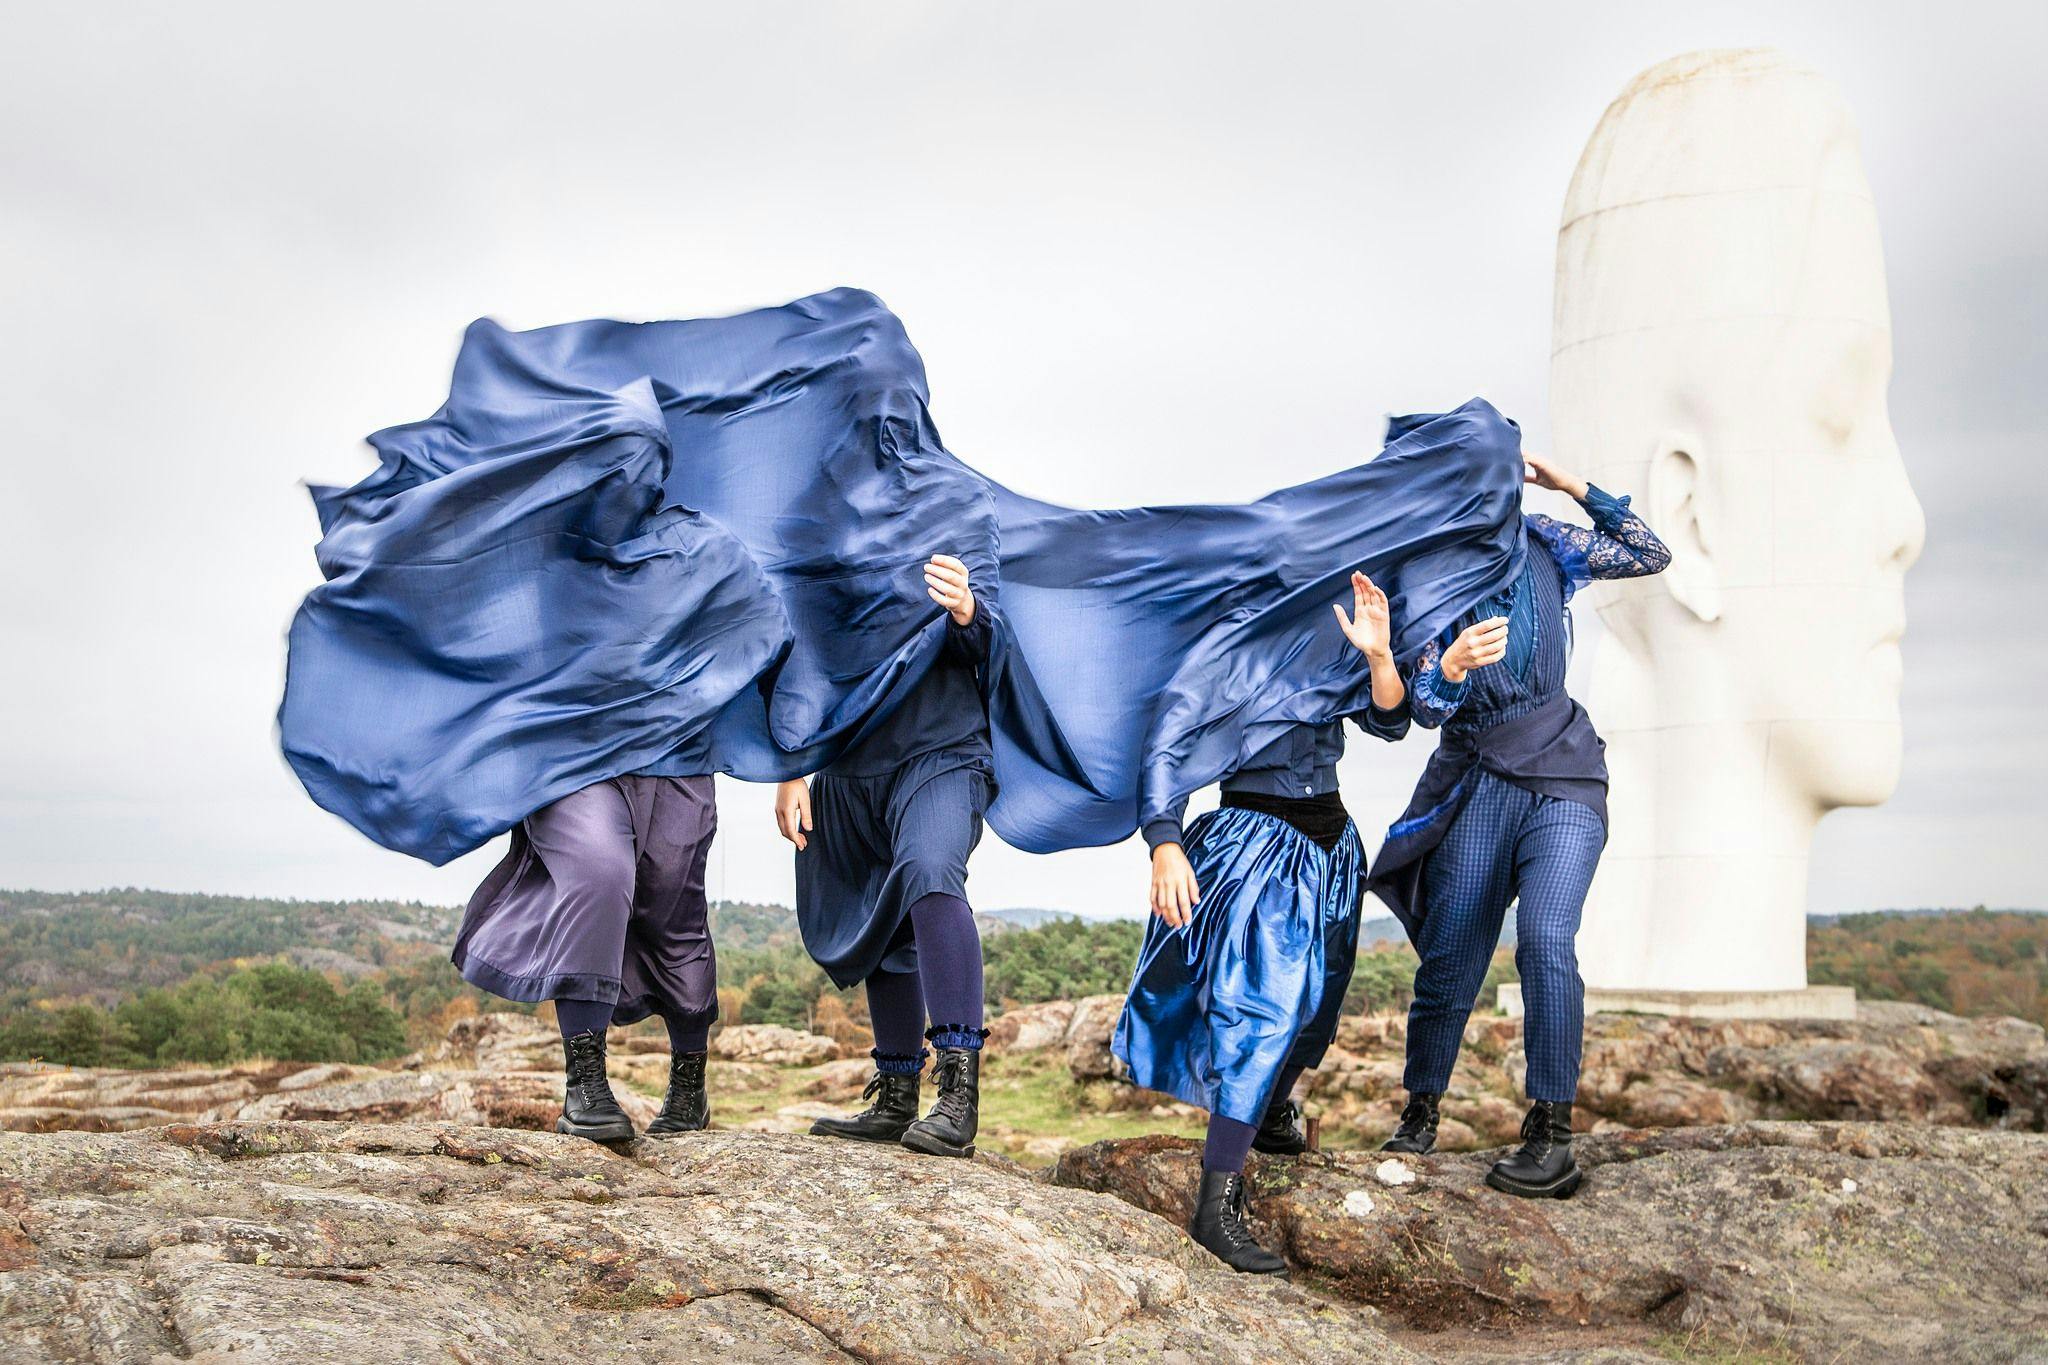 Fyra personer under ett svepande blått tyg. Utomhus, framför en stor skulptur av ett ansikte.